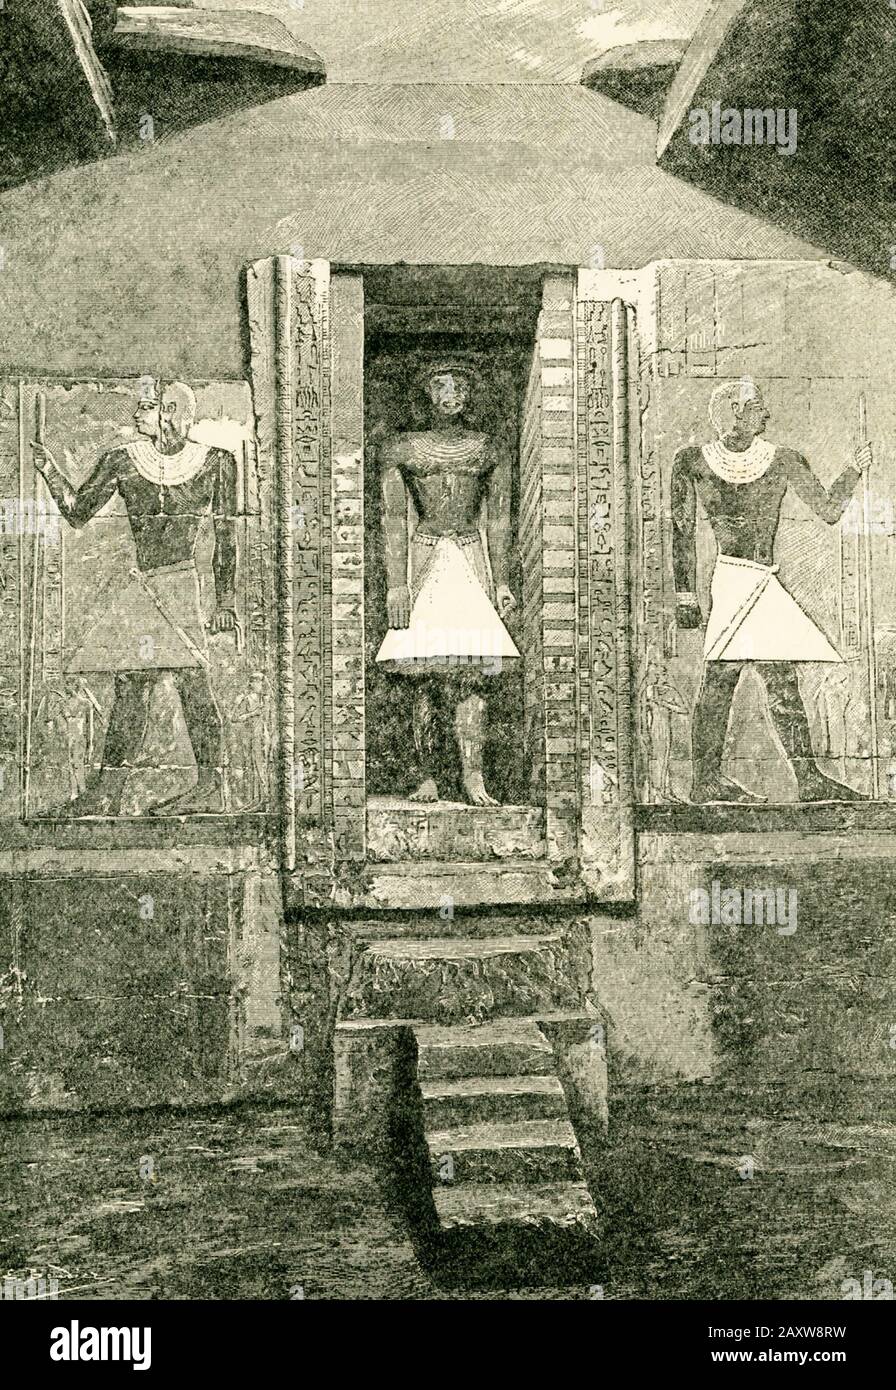 Stele in Form einer Tür und die Statue des Grabes von Mirruka, gezeichnet von Boudier von einer von M de Morgan gezeichneten Fotografie des Grabes von Mirruka. Mirruka wird nun häufiger Mereruka geschrieben. Die Mastaba von Mereruka ist die größte und aufwendigste aller nicht-königlichen Gräber in Saqqara mit insgesamt 33 Zimmern oder Kammern. Mereruka war der Wesir des Königs Teti (C 232323-2191 v. Chr.), des ersten Herrschers der 6. Dynastie (c 2323-2150 v. Chr.) Der Zeit Des Alten Königreichs Ägypten. Stockfoto